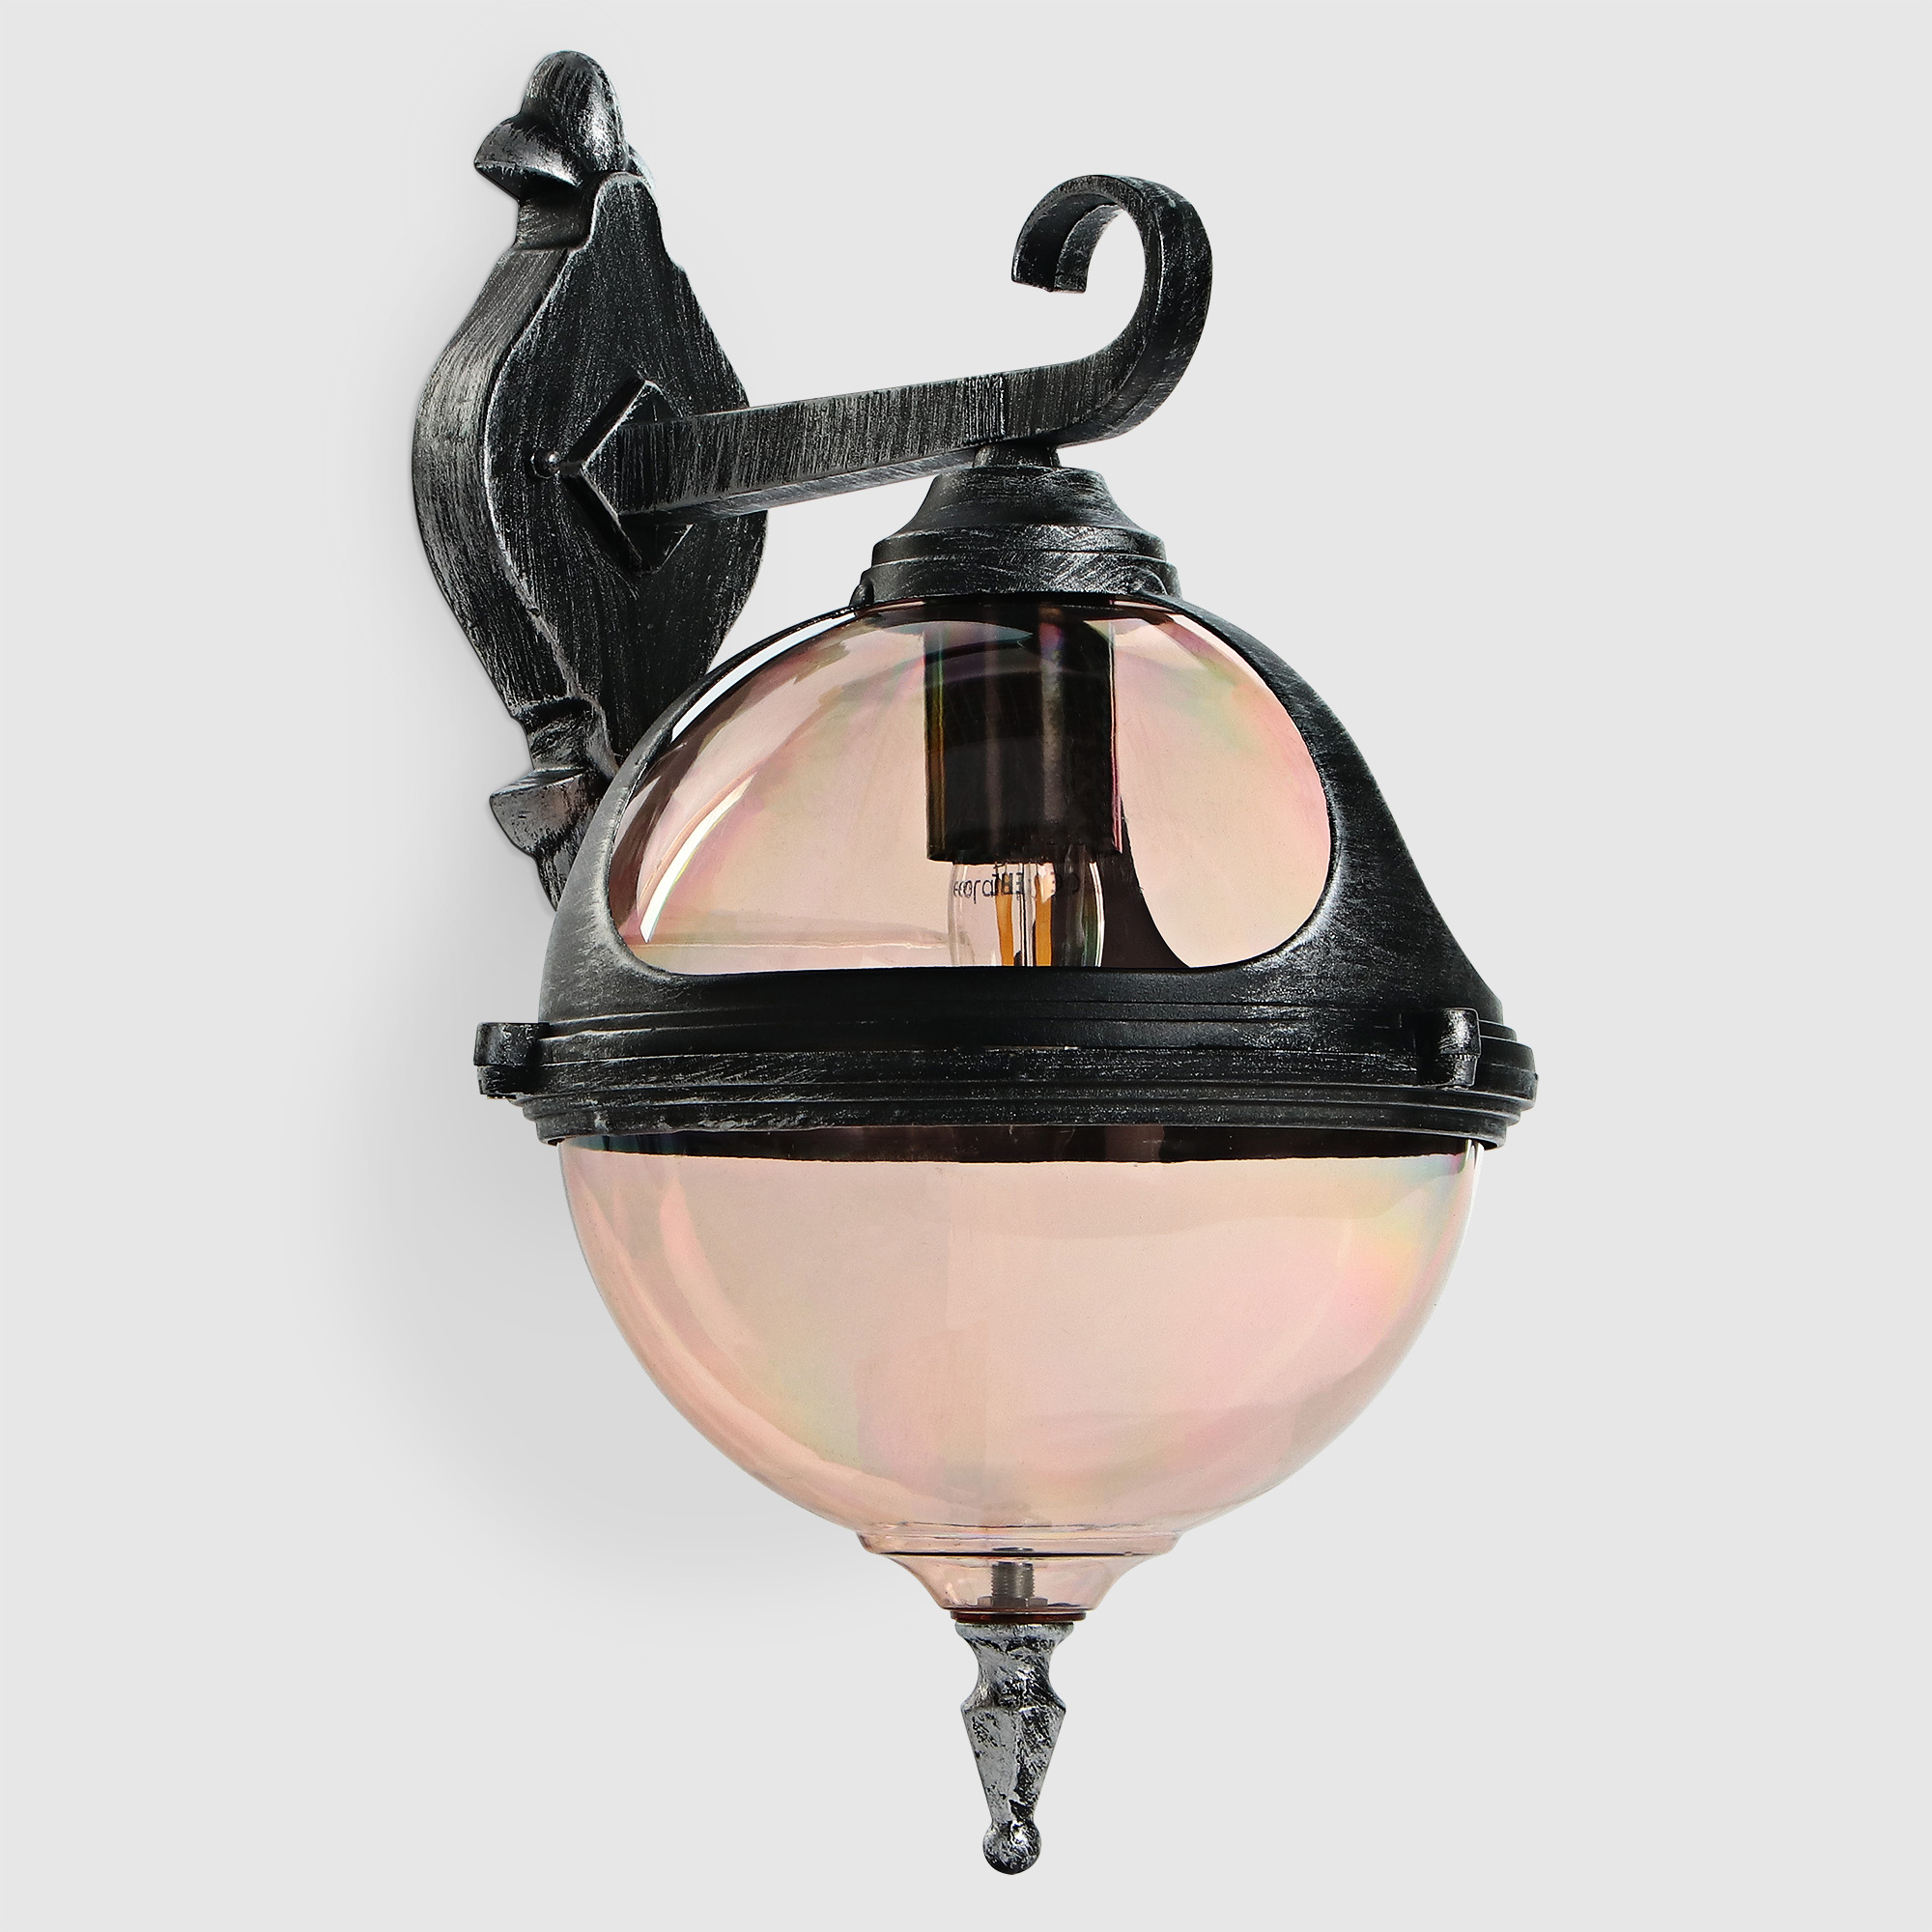 Светильник настенный Amber Lamp 8261B садовый, черное серебро, цвет шампань - фото 1